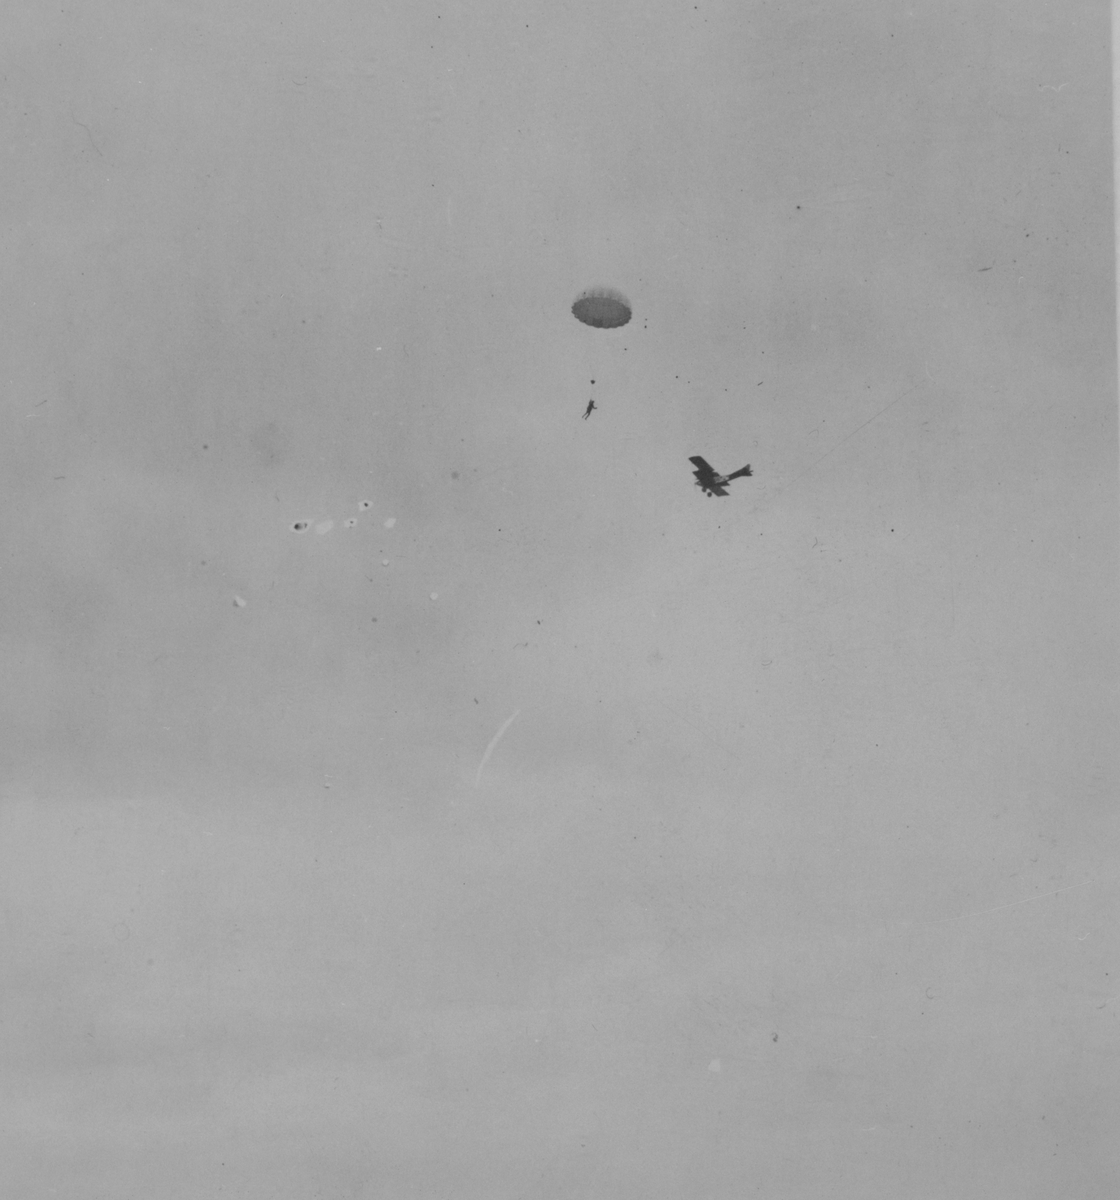 Fallskärmshopp. Raoul Thörnblad hoppar med fallskärm vid Internationella luftfartsutställningen i Göteborg, 1923.